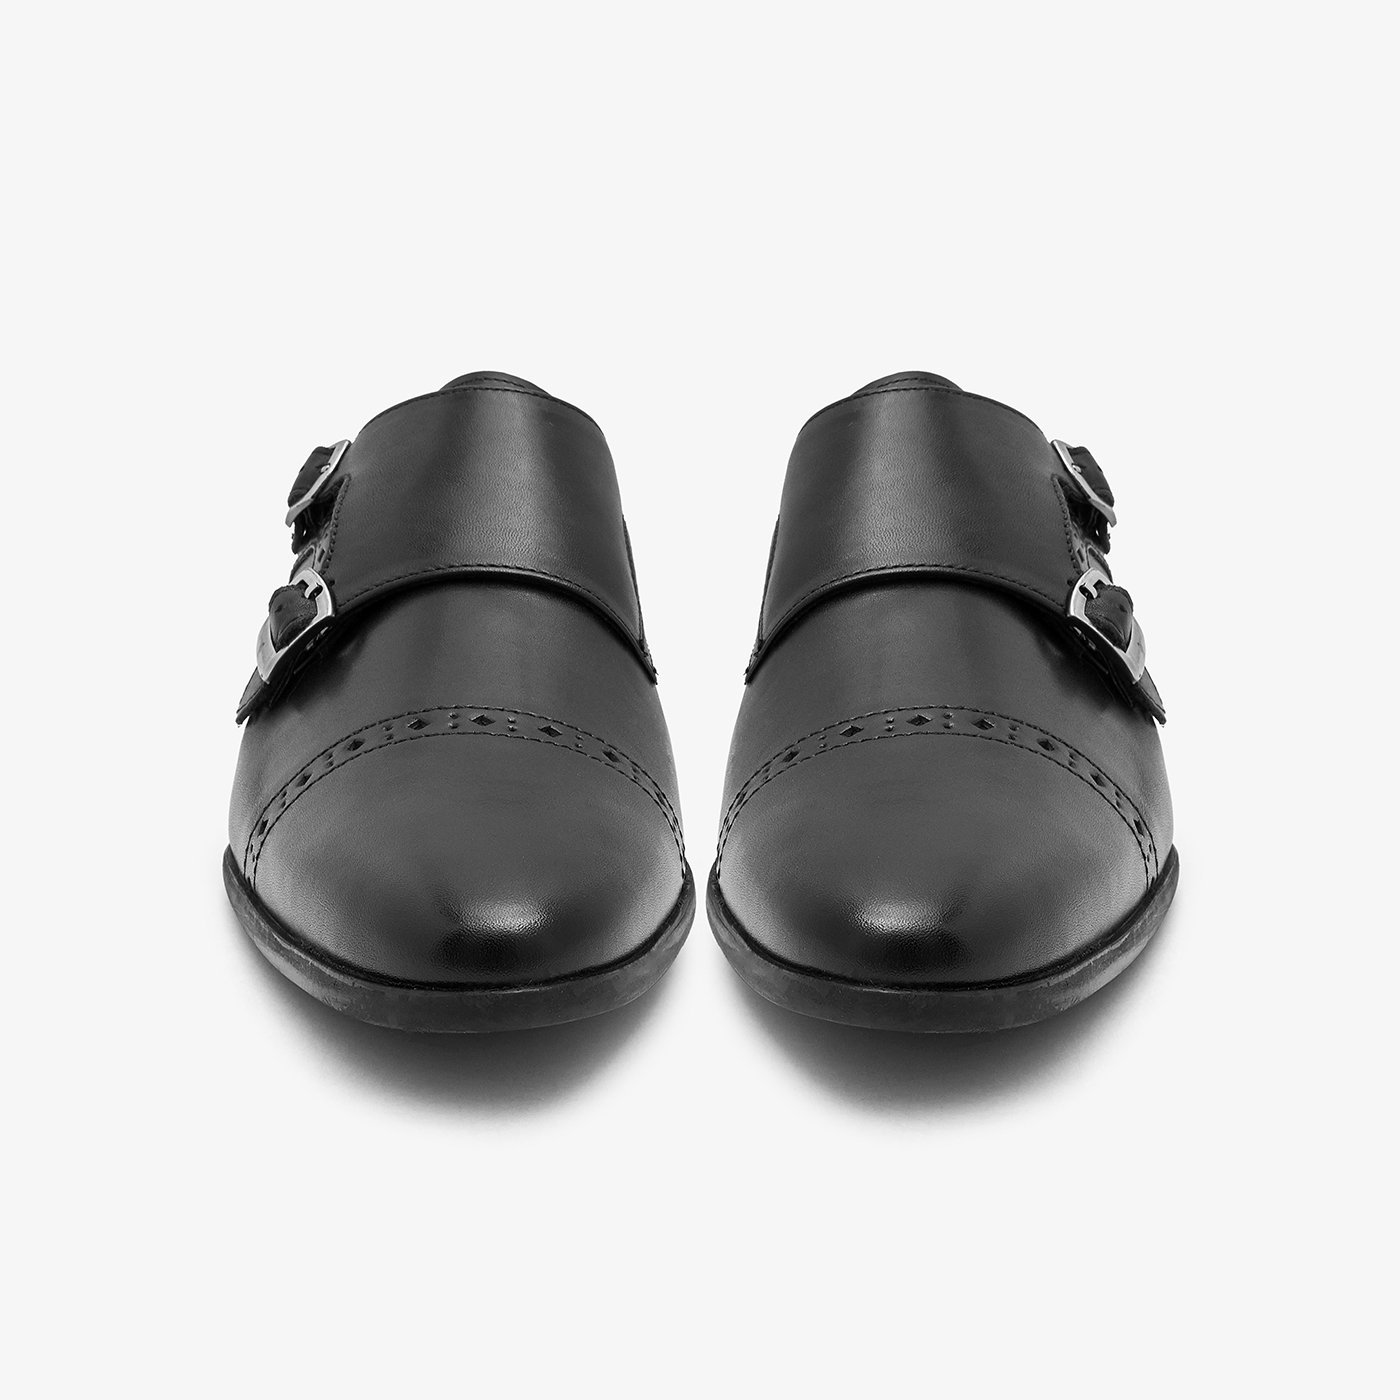 Monk-Strap Formal Shoes for Men